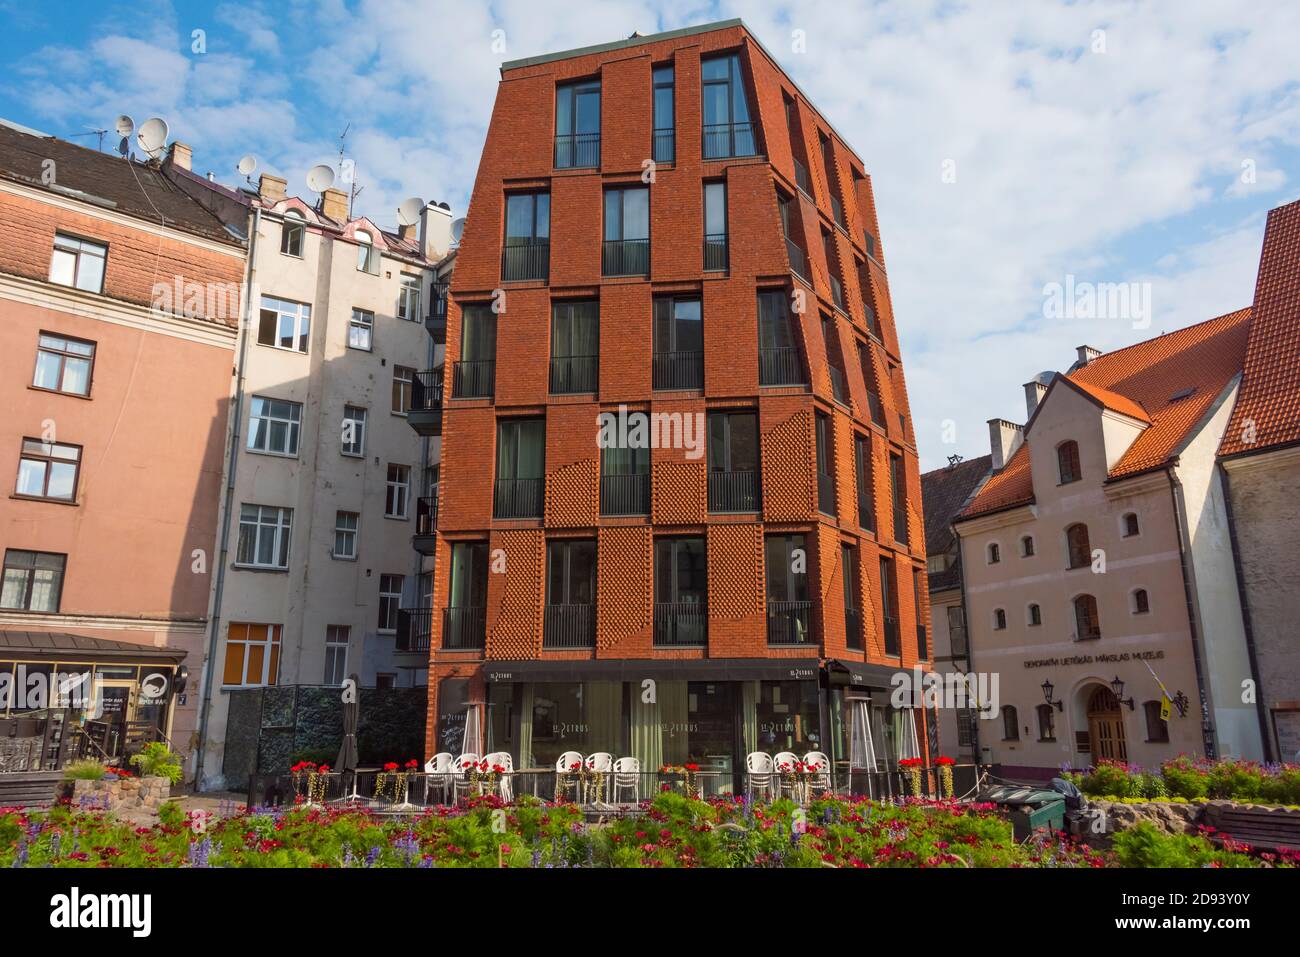 Nouveau bâtiment résidentiel de style architectural en harmonie avec la vieille ville, Riga, Lettonie Banque D'Images